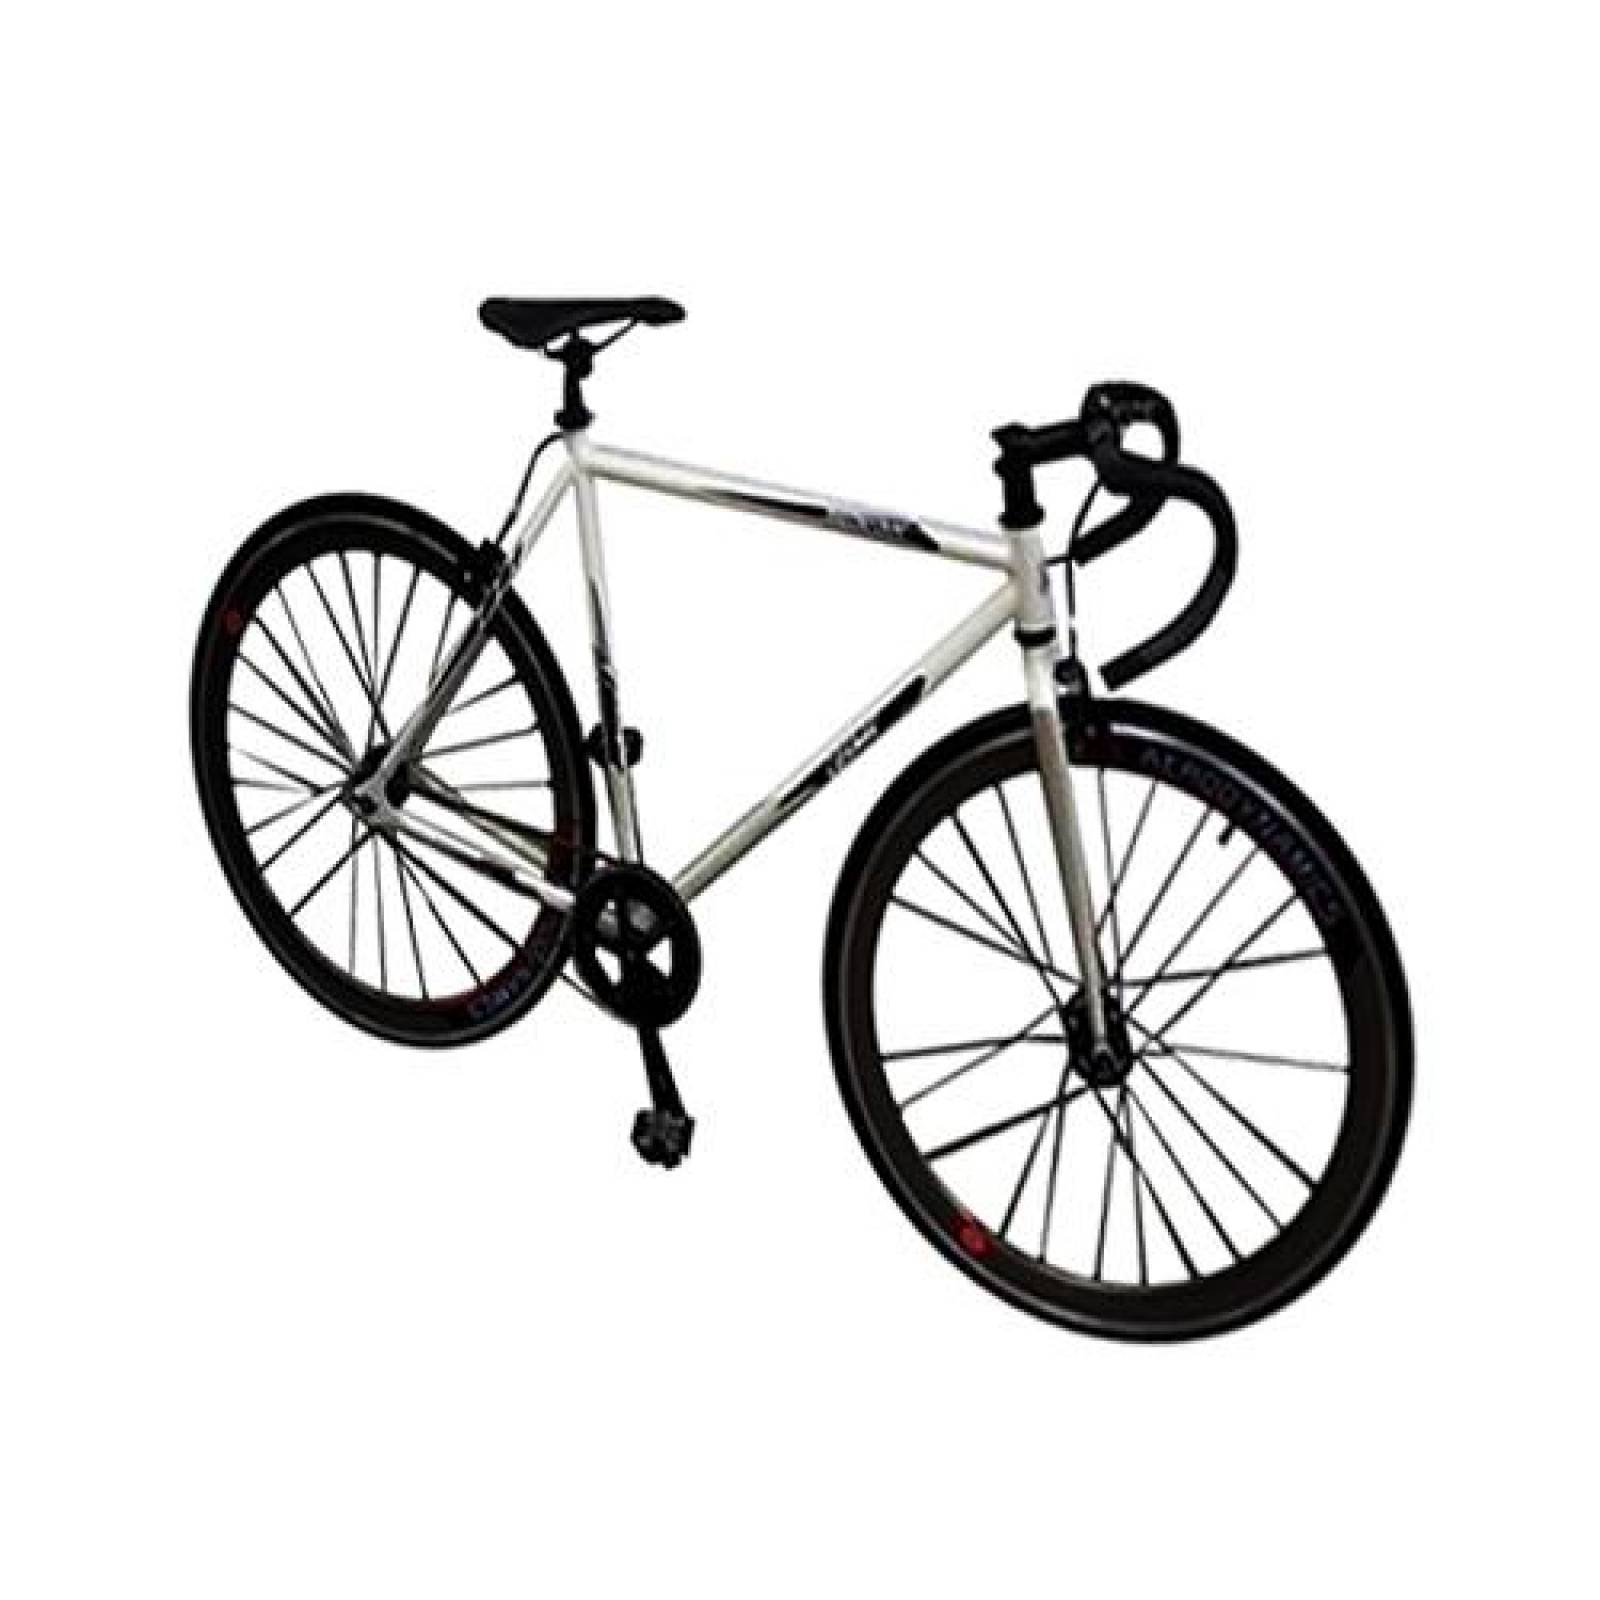 Bicicleta R700c De Aluminio Fixie Cosmic Manubrio Carrera 